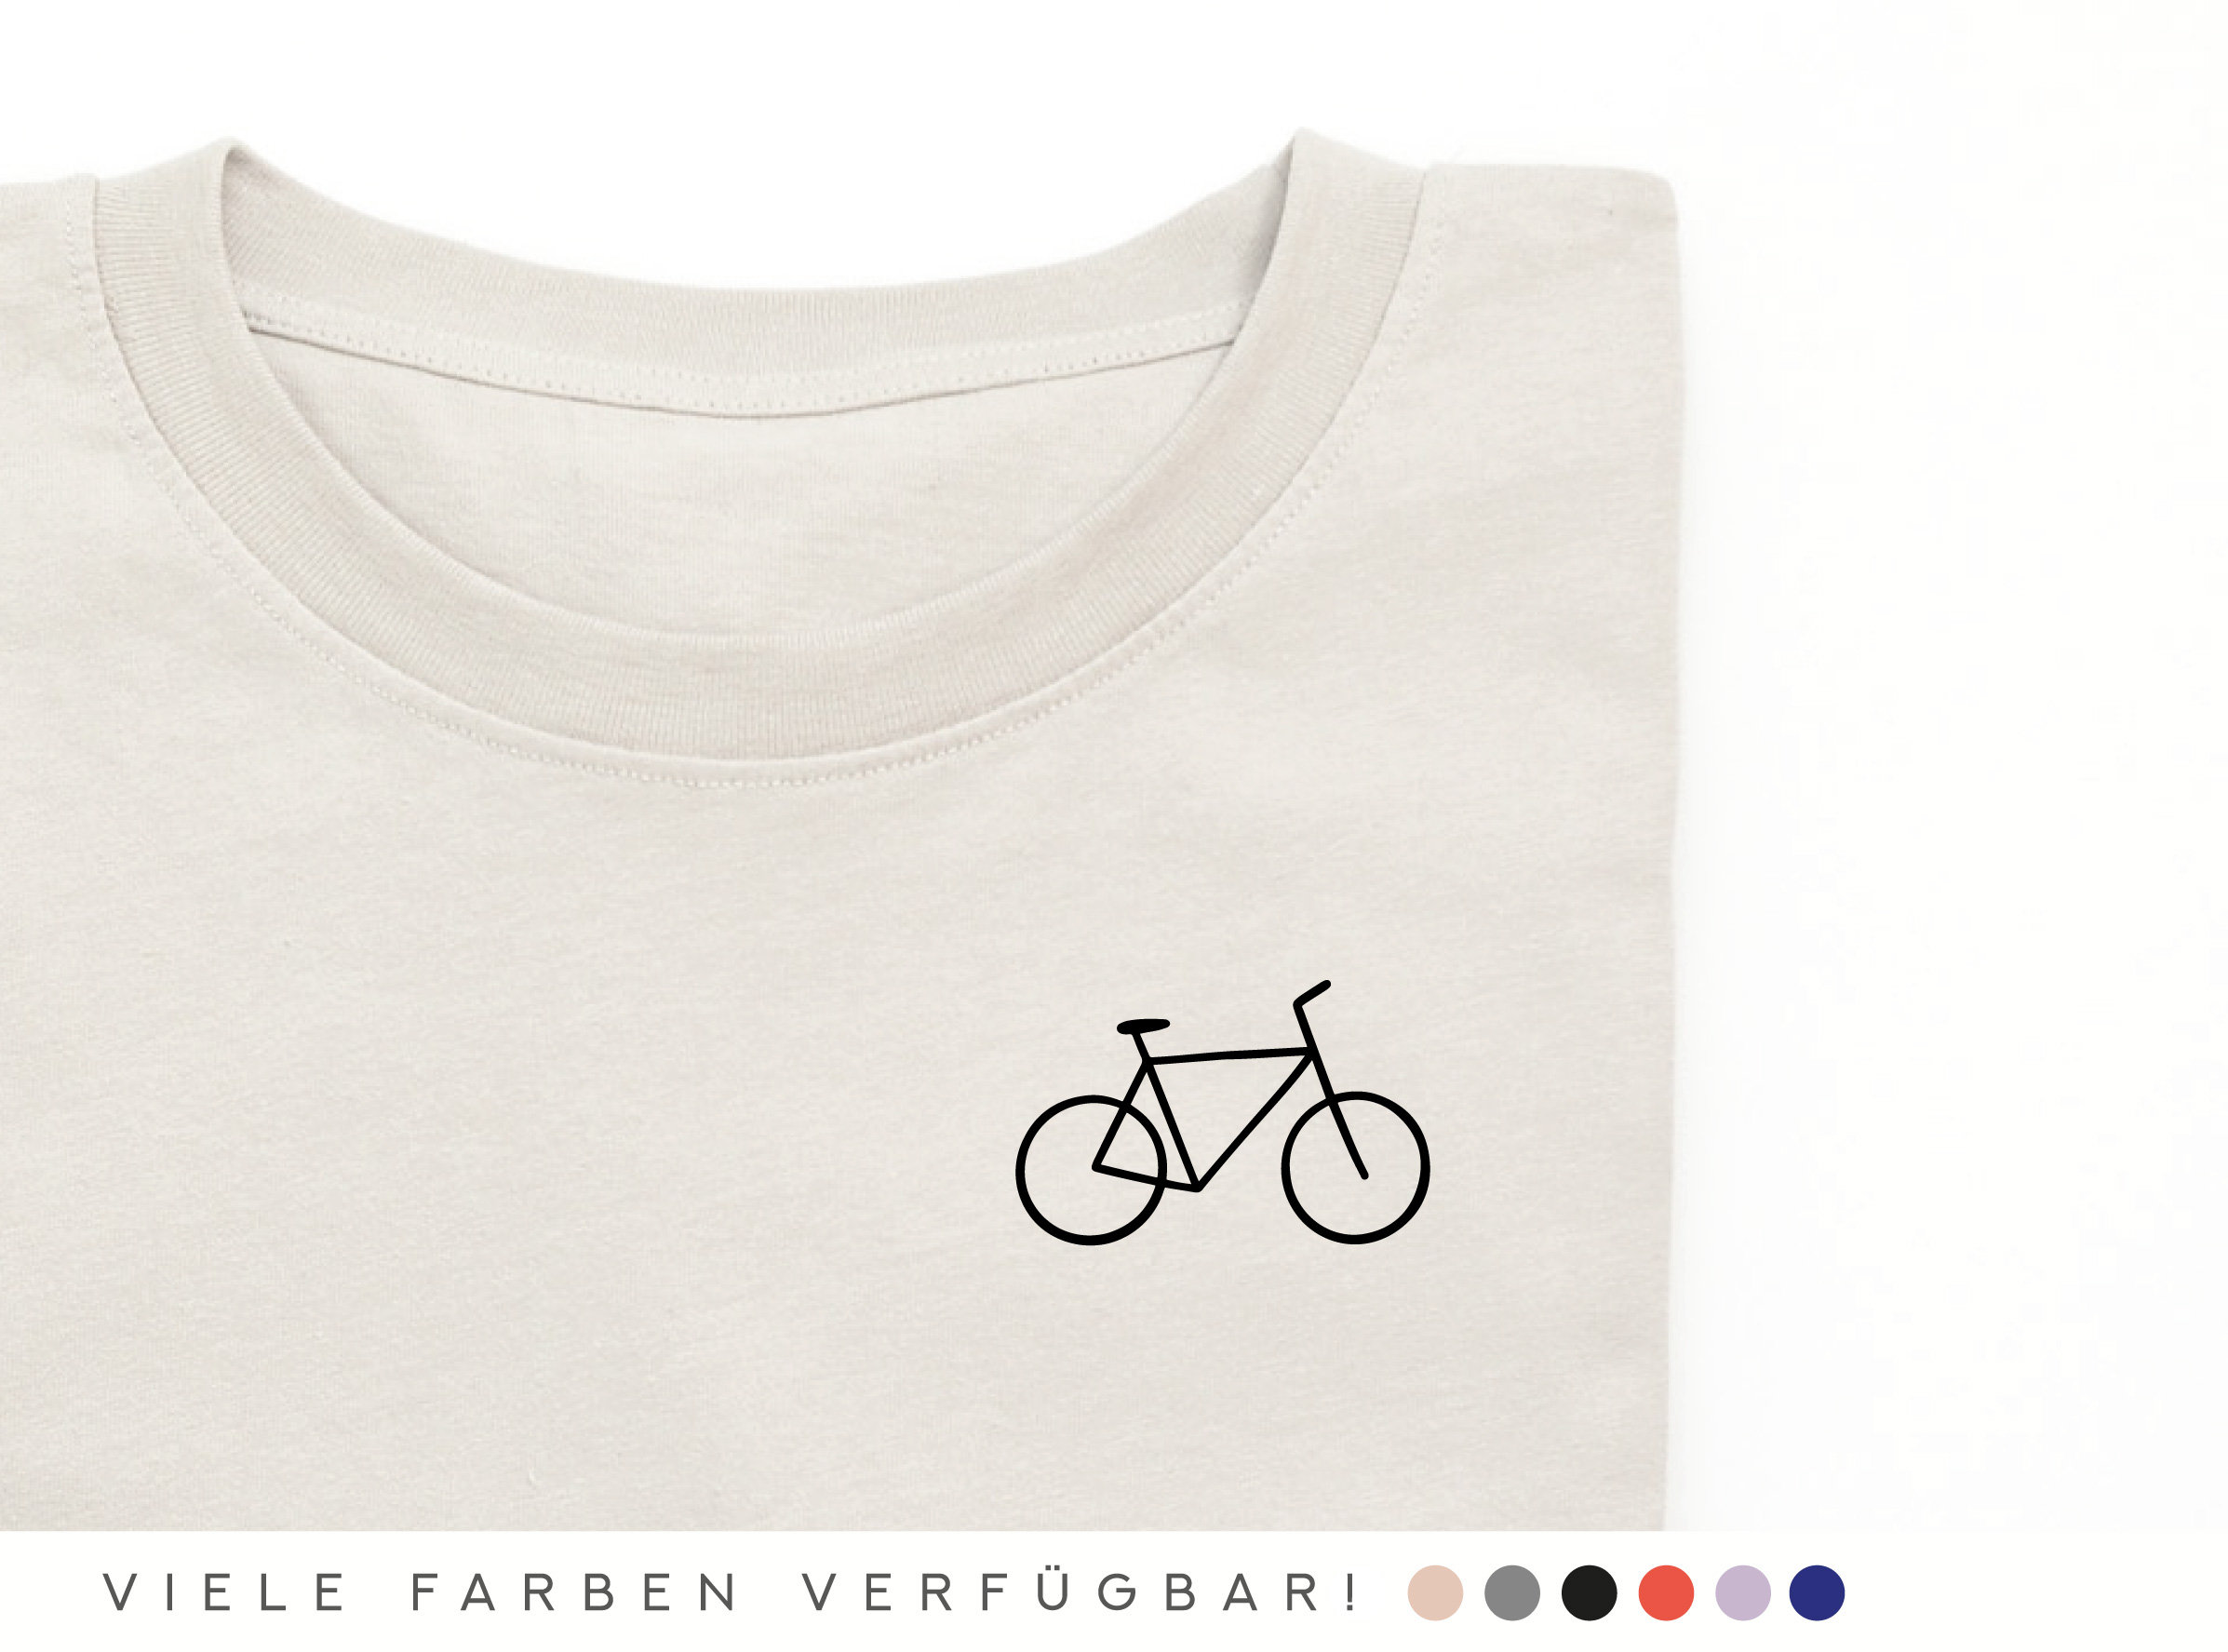 Fahrrad symbol - .de